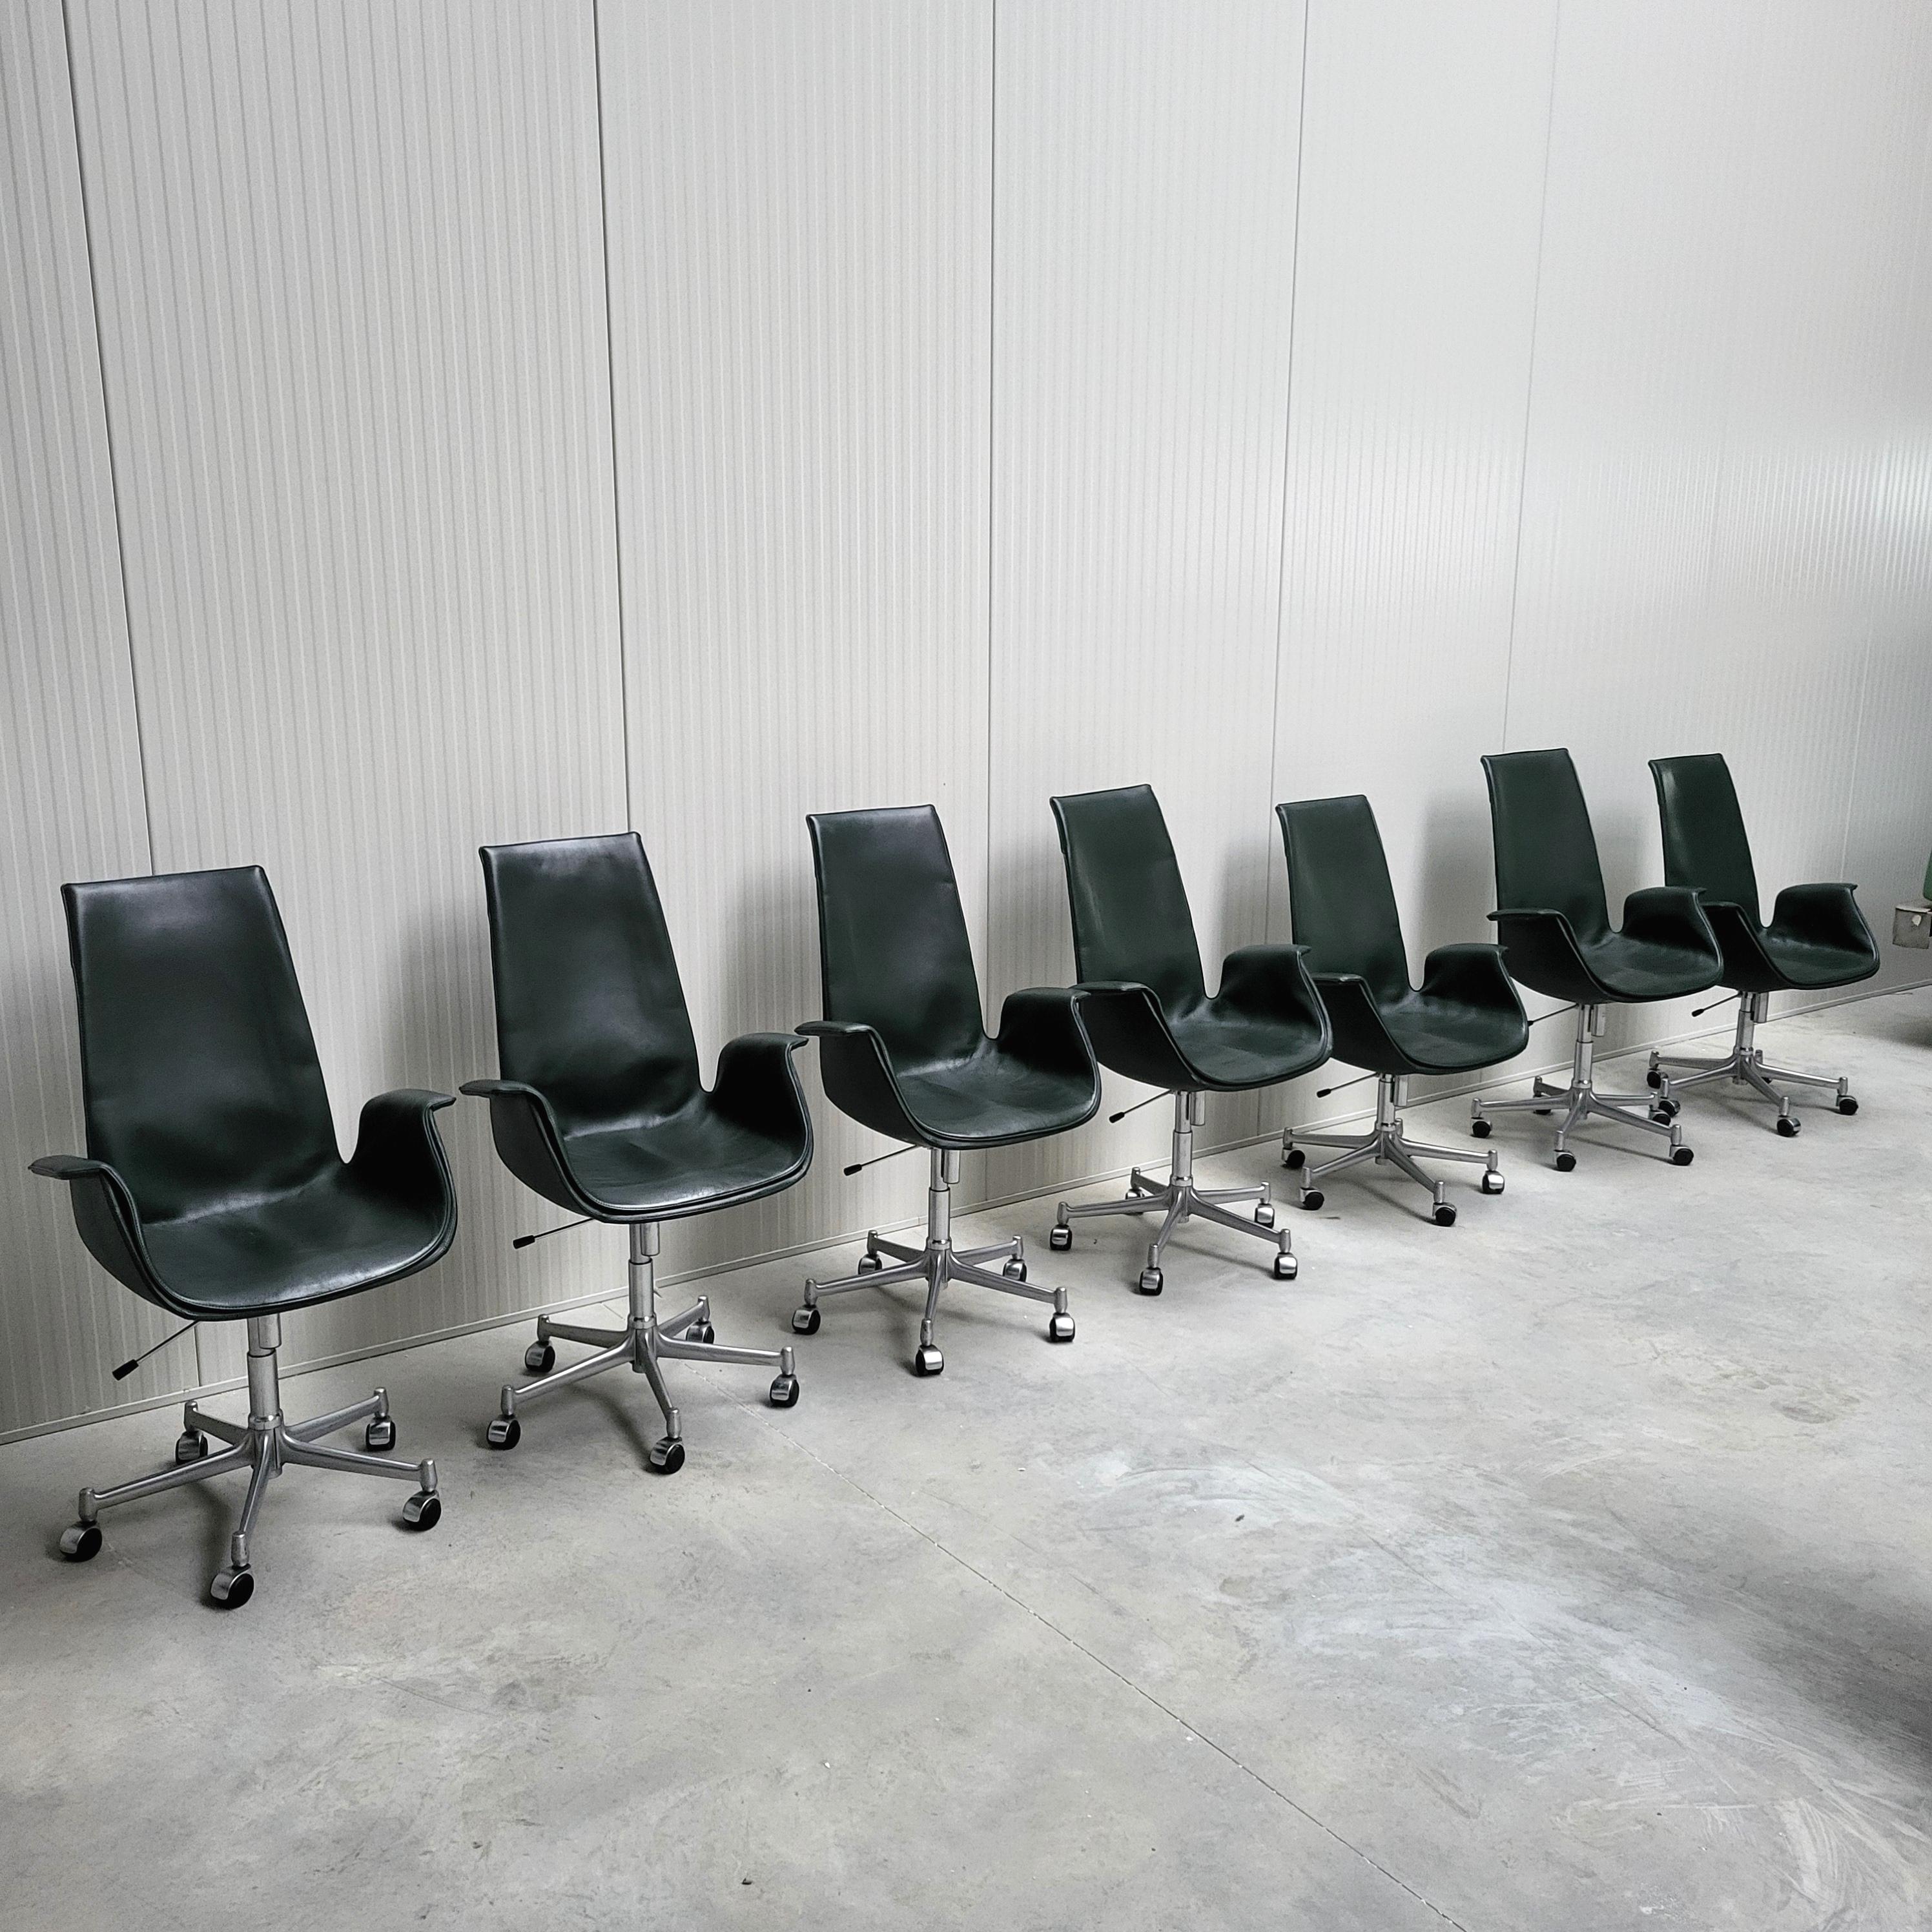 Ce bel exemple des chaises de bureau FK6725 Bird a été conçu par Jorgen Kastholm & Preben Fabricius au début des années 60 et produit par Walter Knoll dans les années 1990. 

La chaise dite 